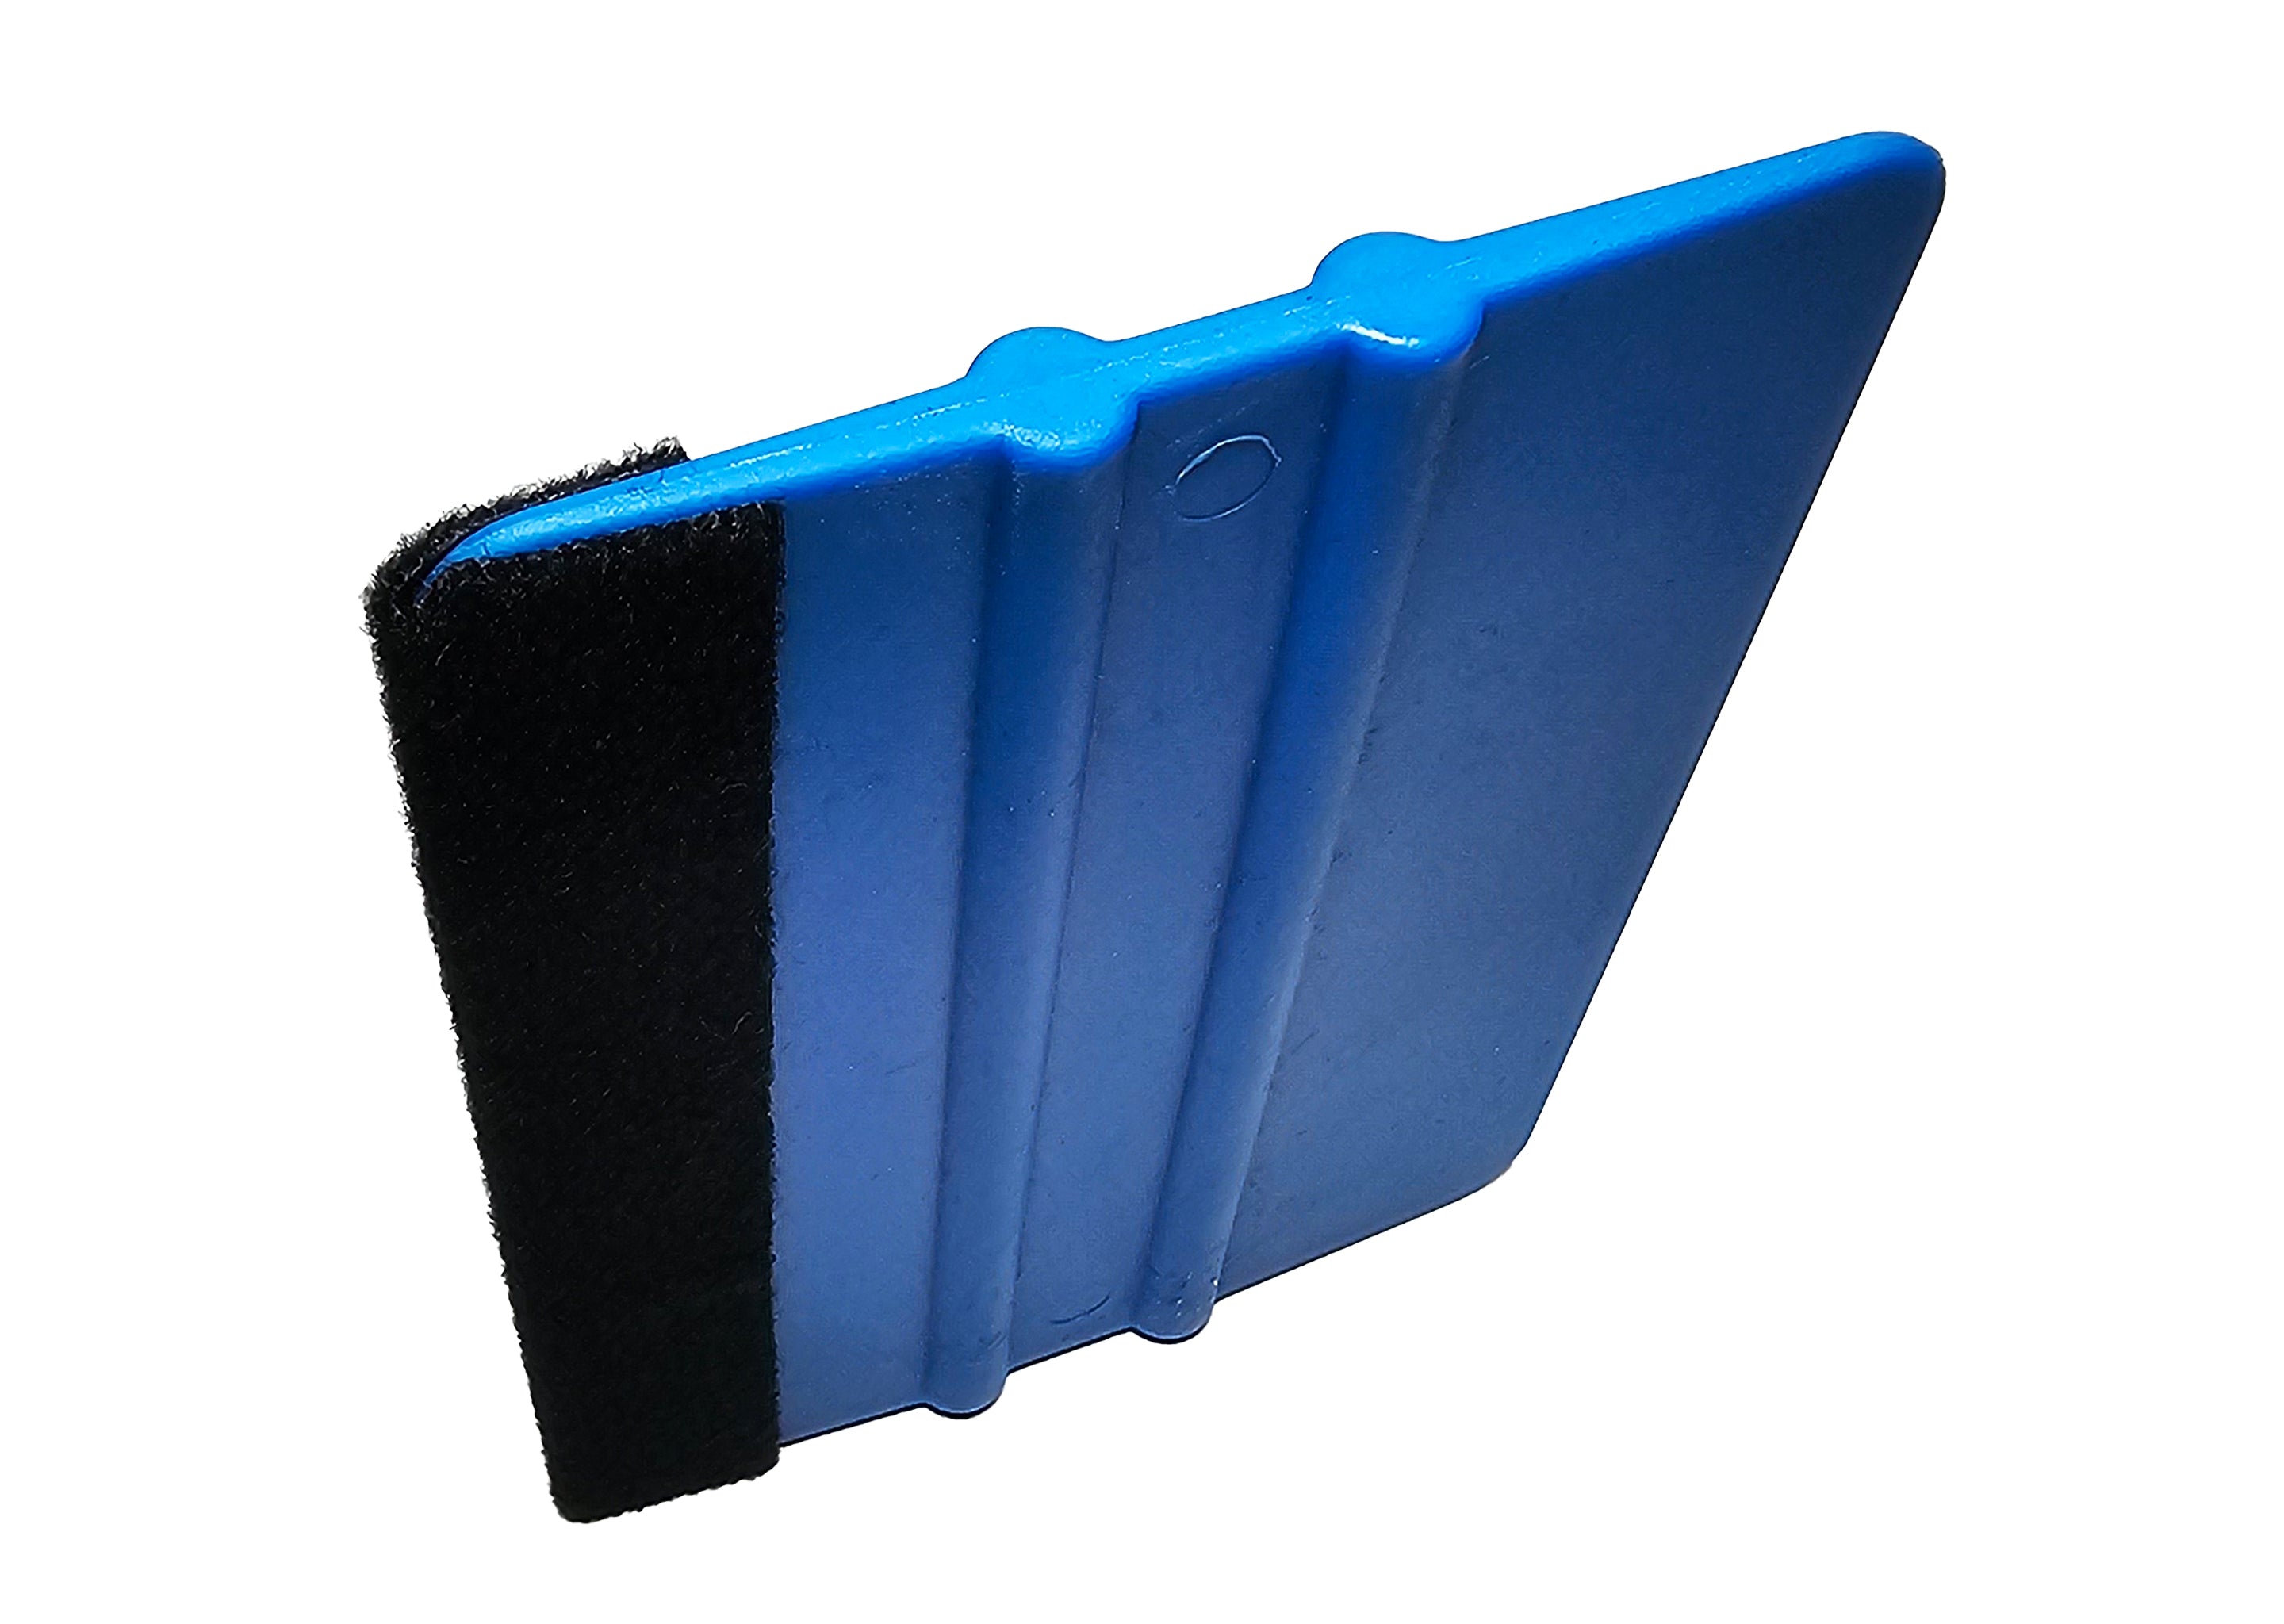 Filzrakel Folienrakel für Wandtattoos und Klebefolien allgemein in blau 3 Stück - 0